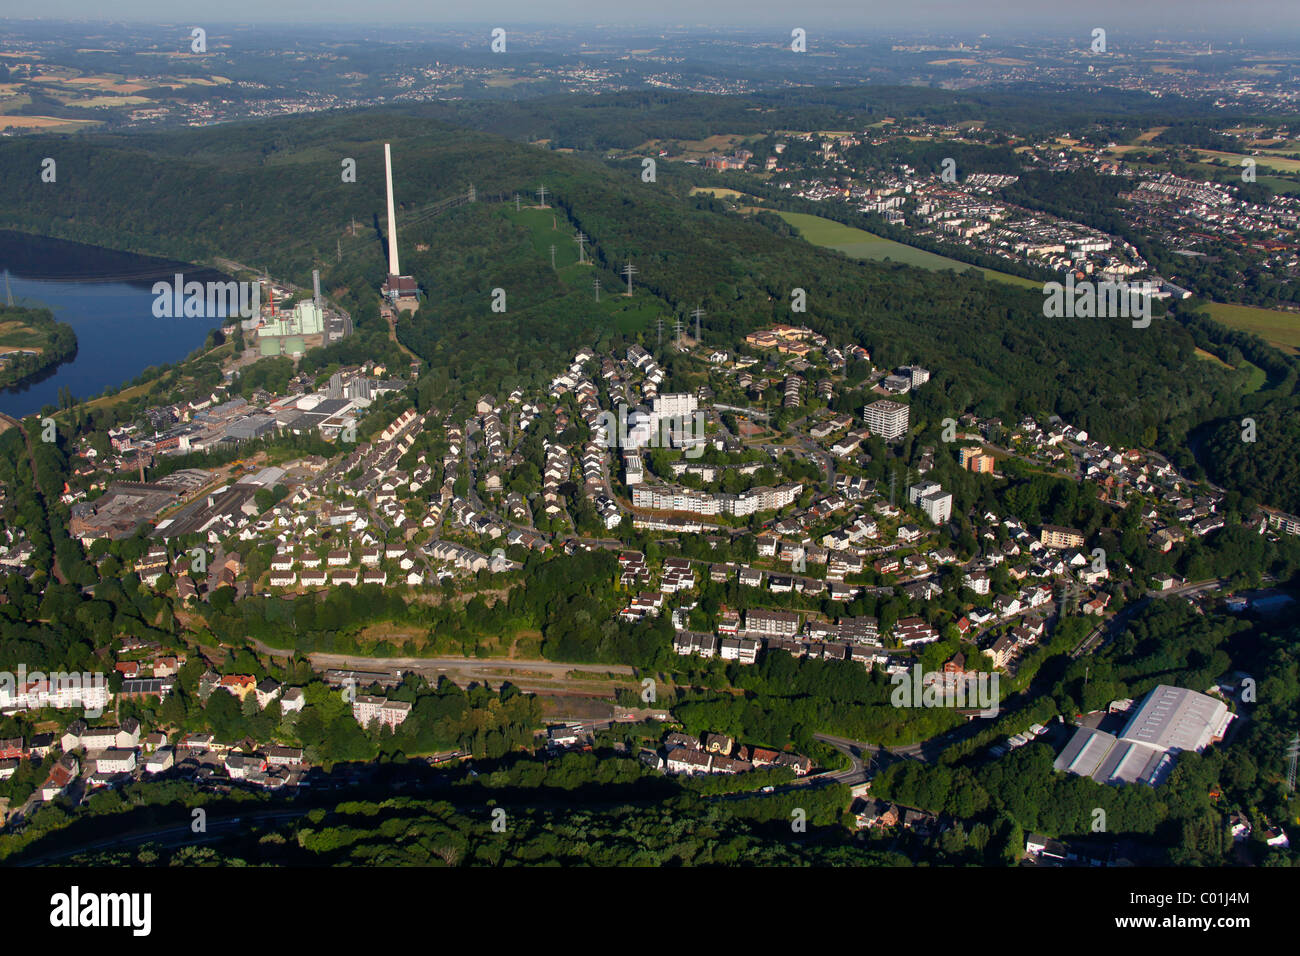 Aerial view, Herdecke, Ruhrgebiet area, North Rhine-Westphalia, Germany, Europe Stock Photo